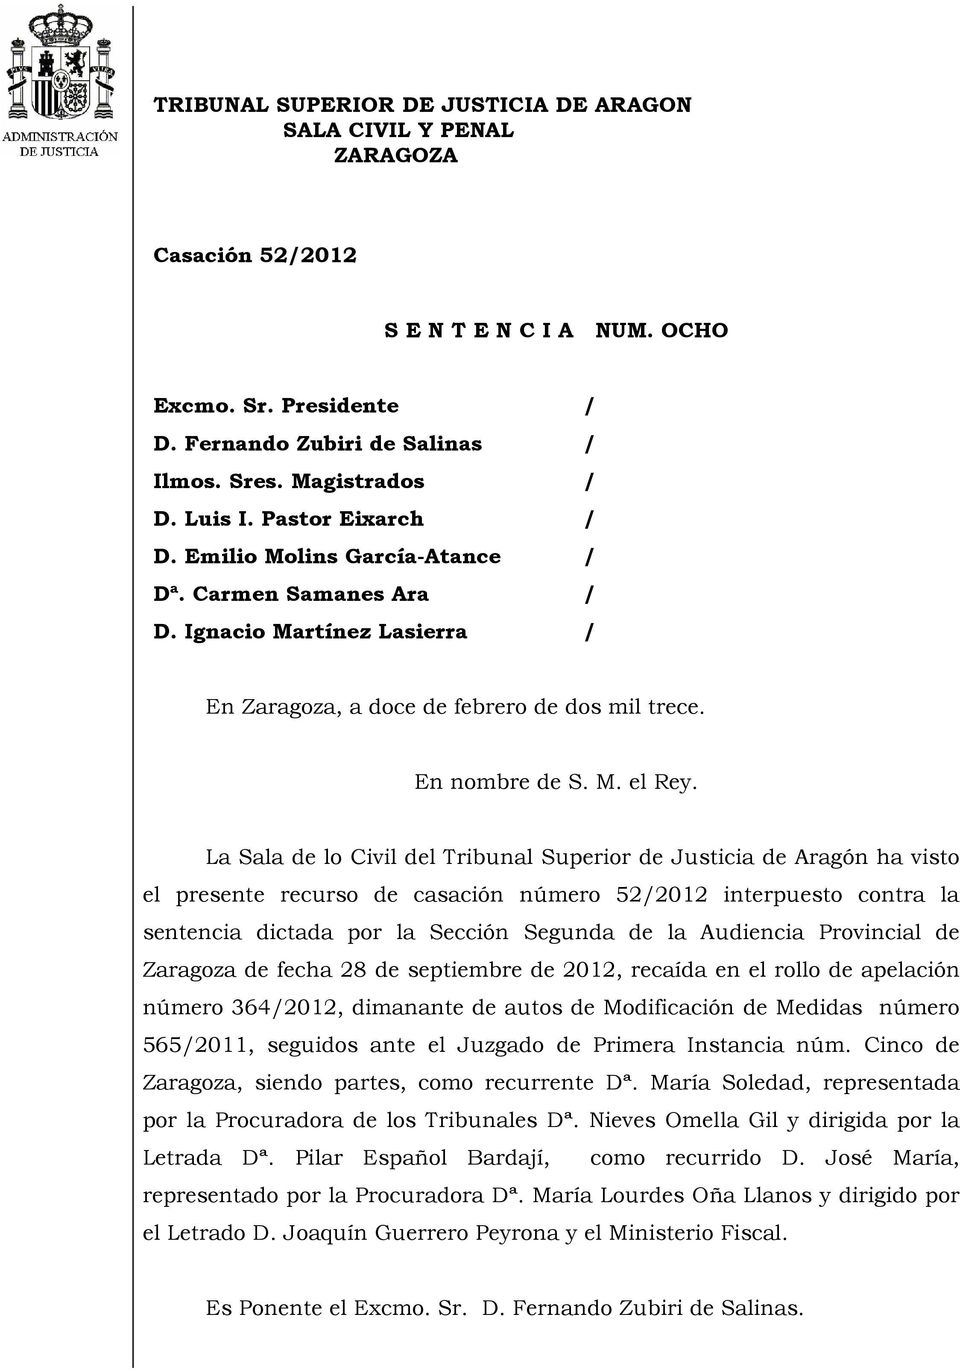 La Sala de lo Civil del Tribunal Superior de Justicia de Aragón ha visto el presente recurso de casación número 52/2012 interpuesto contra la sentencia dictada por la Sección Segunda de la Audiencia